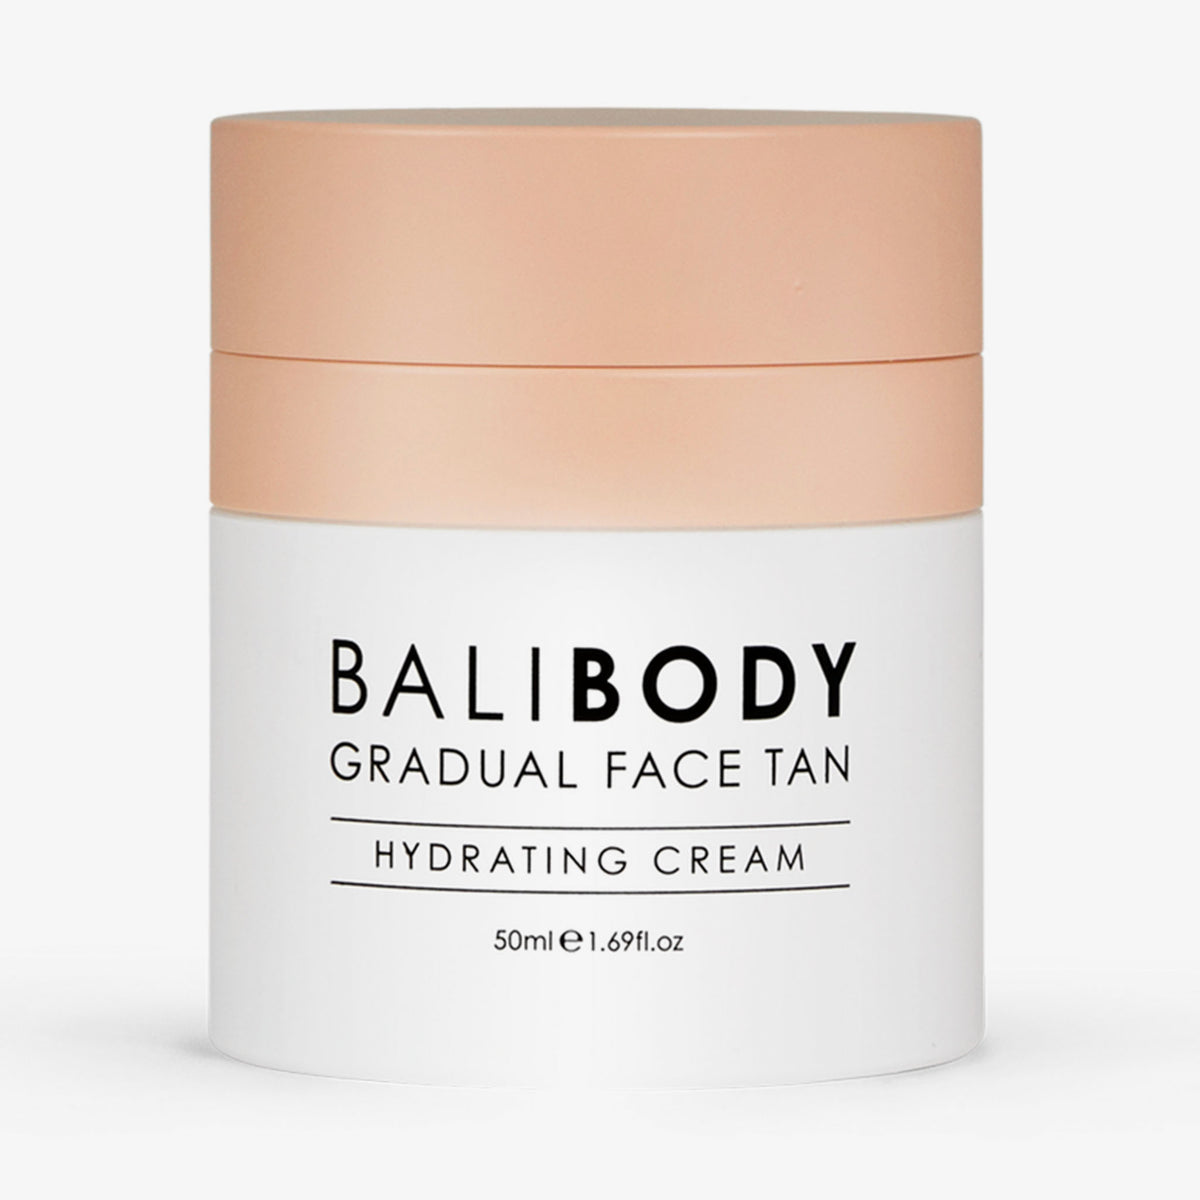 Bali Body | Gradual Face Tan